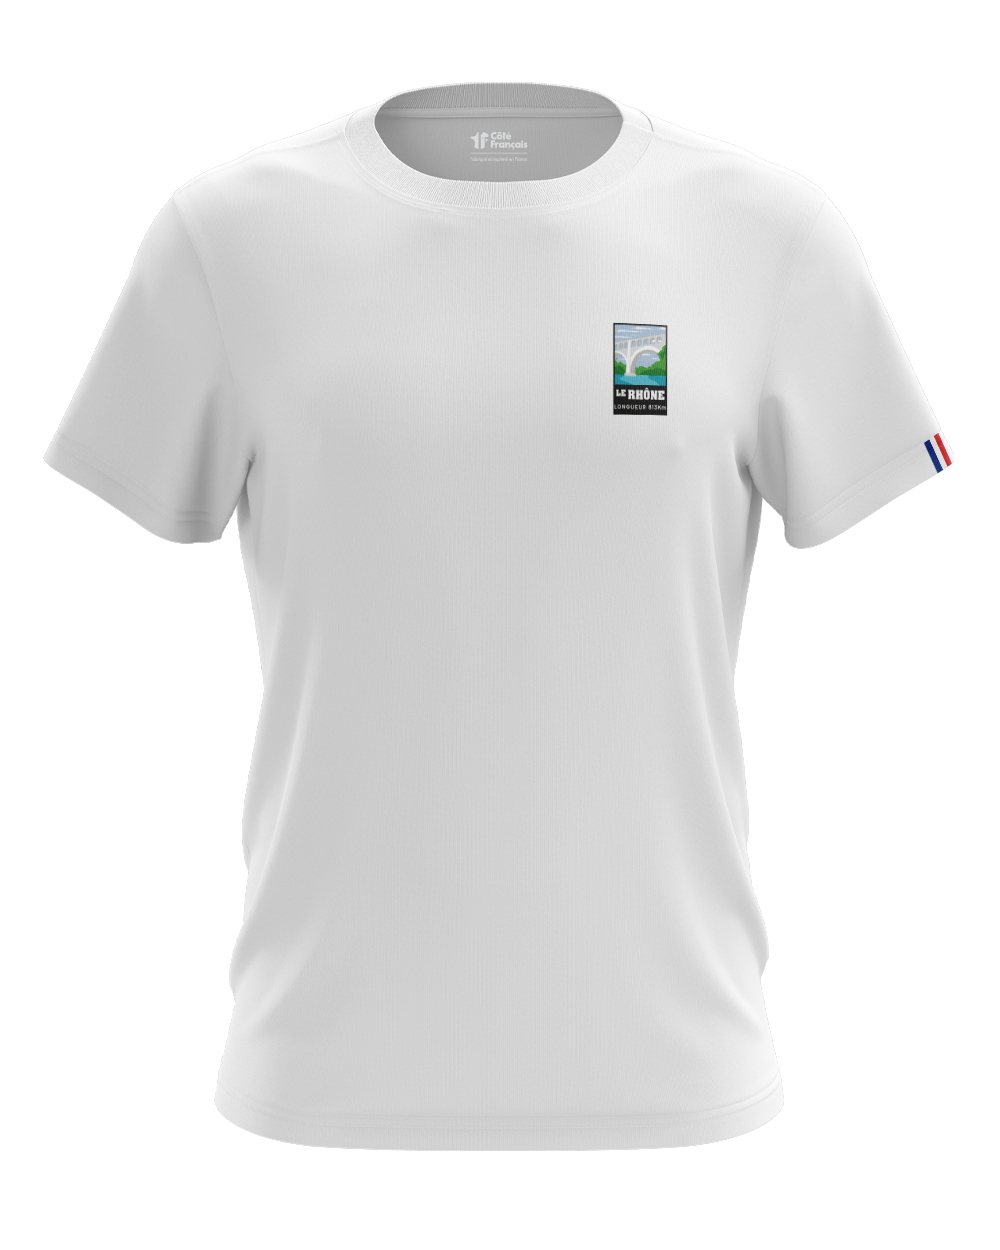 T-Shirt "Fleuve du Rhône" - Blanc